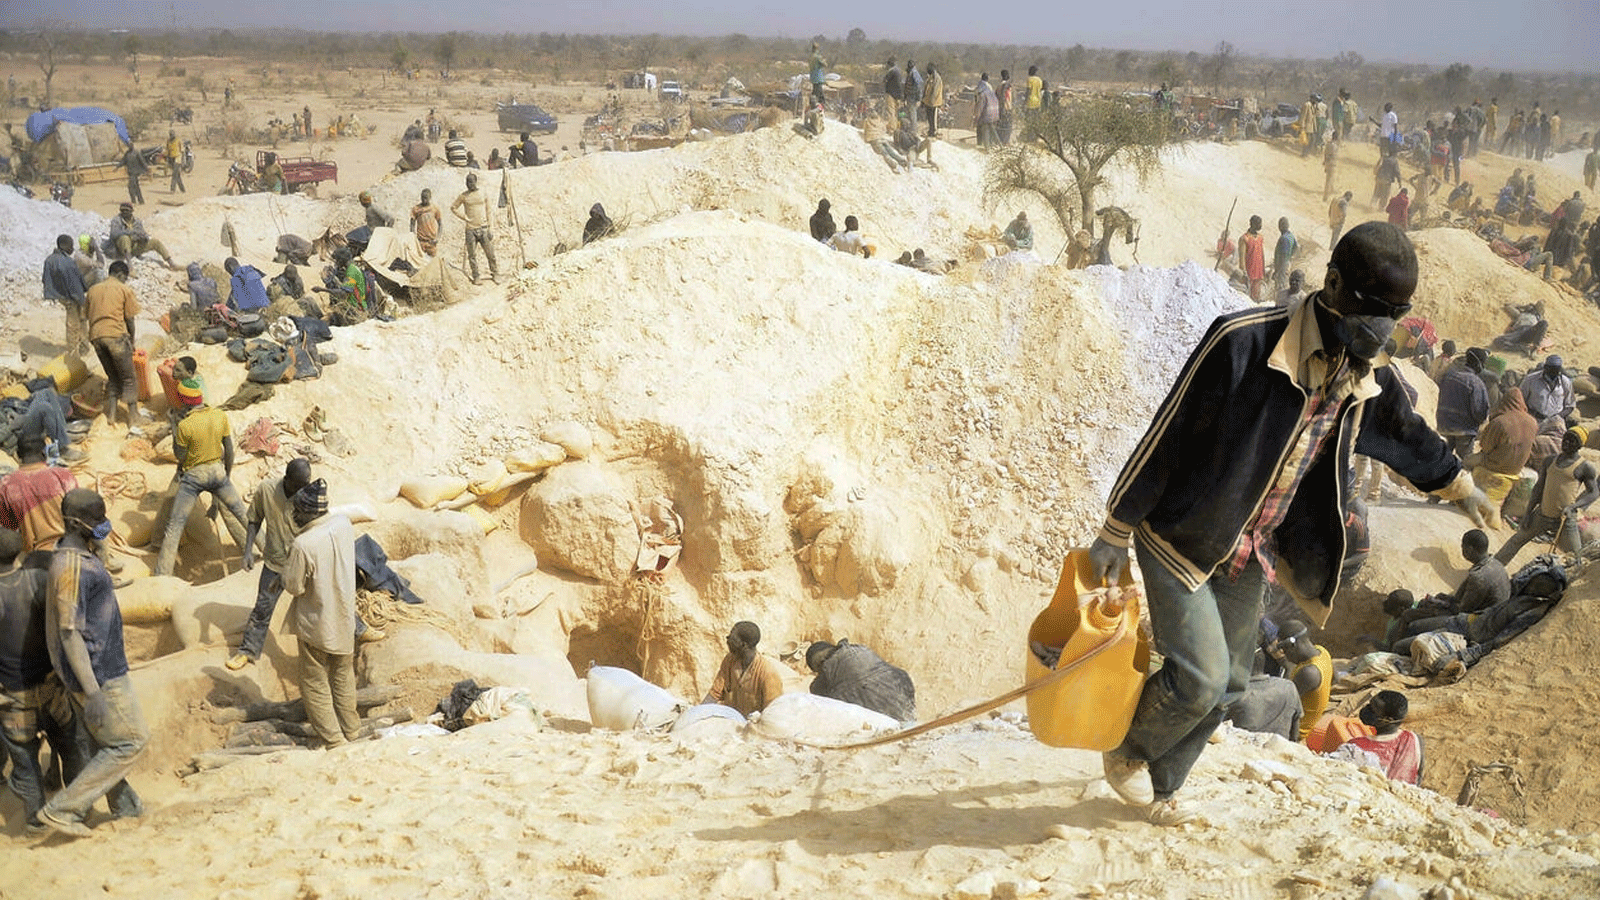  عمال المناجم يعملون في منجم ذهب سري في 20 شباط\ فبراير 2014 في قرية نوبسين، على بعد 10 كيلومترات من مدينة موغتيدو في منطقة غانزورغو في بوركينا فاسو.